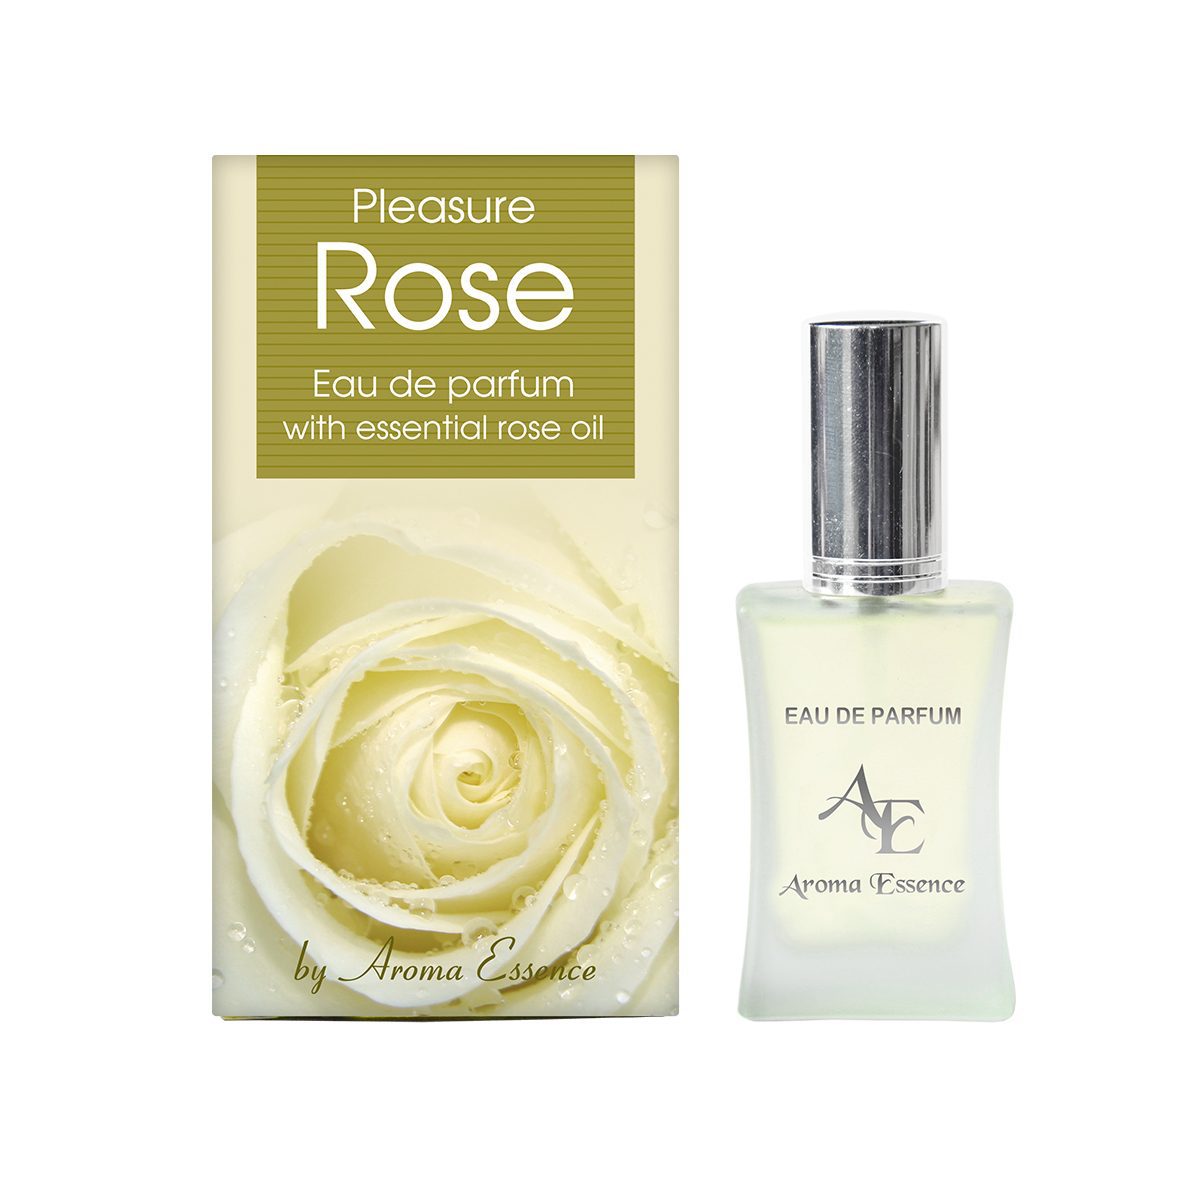 Eau De Parfum Pleasure met puur rozenolie uit Bulgarije - lelies - pioenrozen - jasmijn 35ml